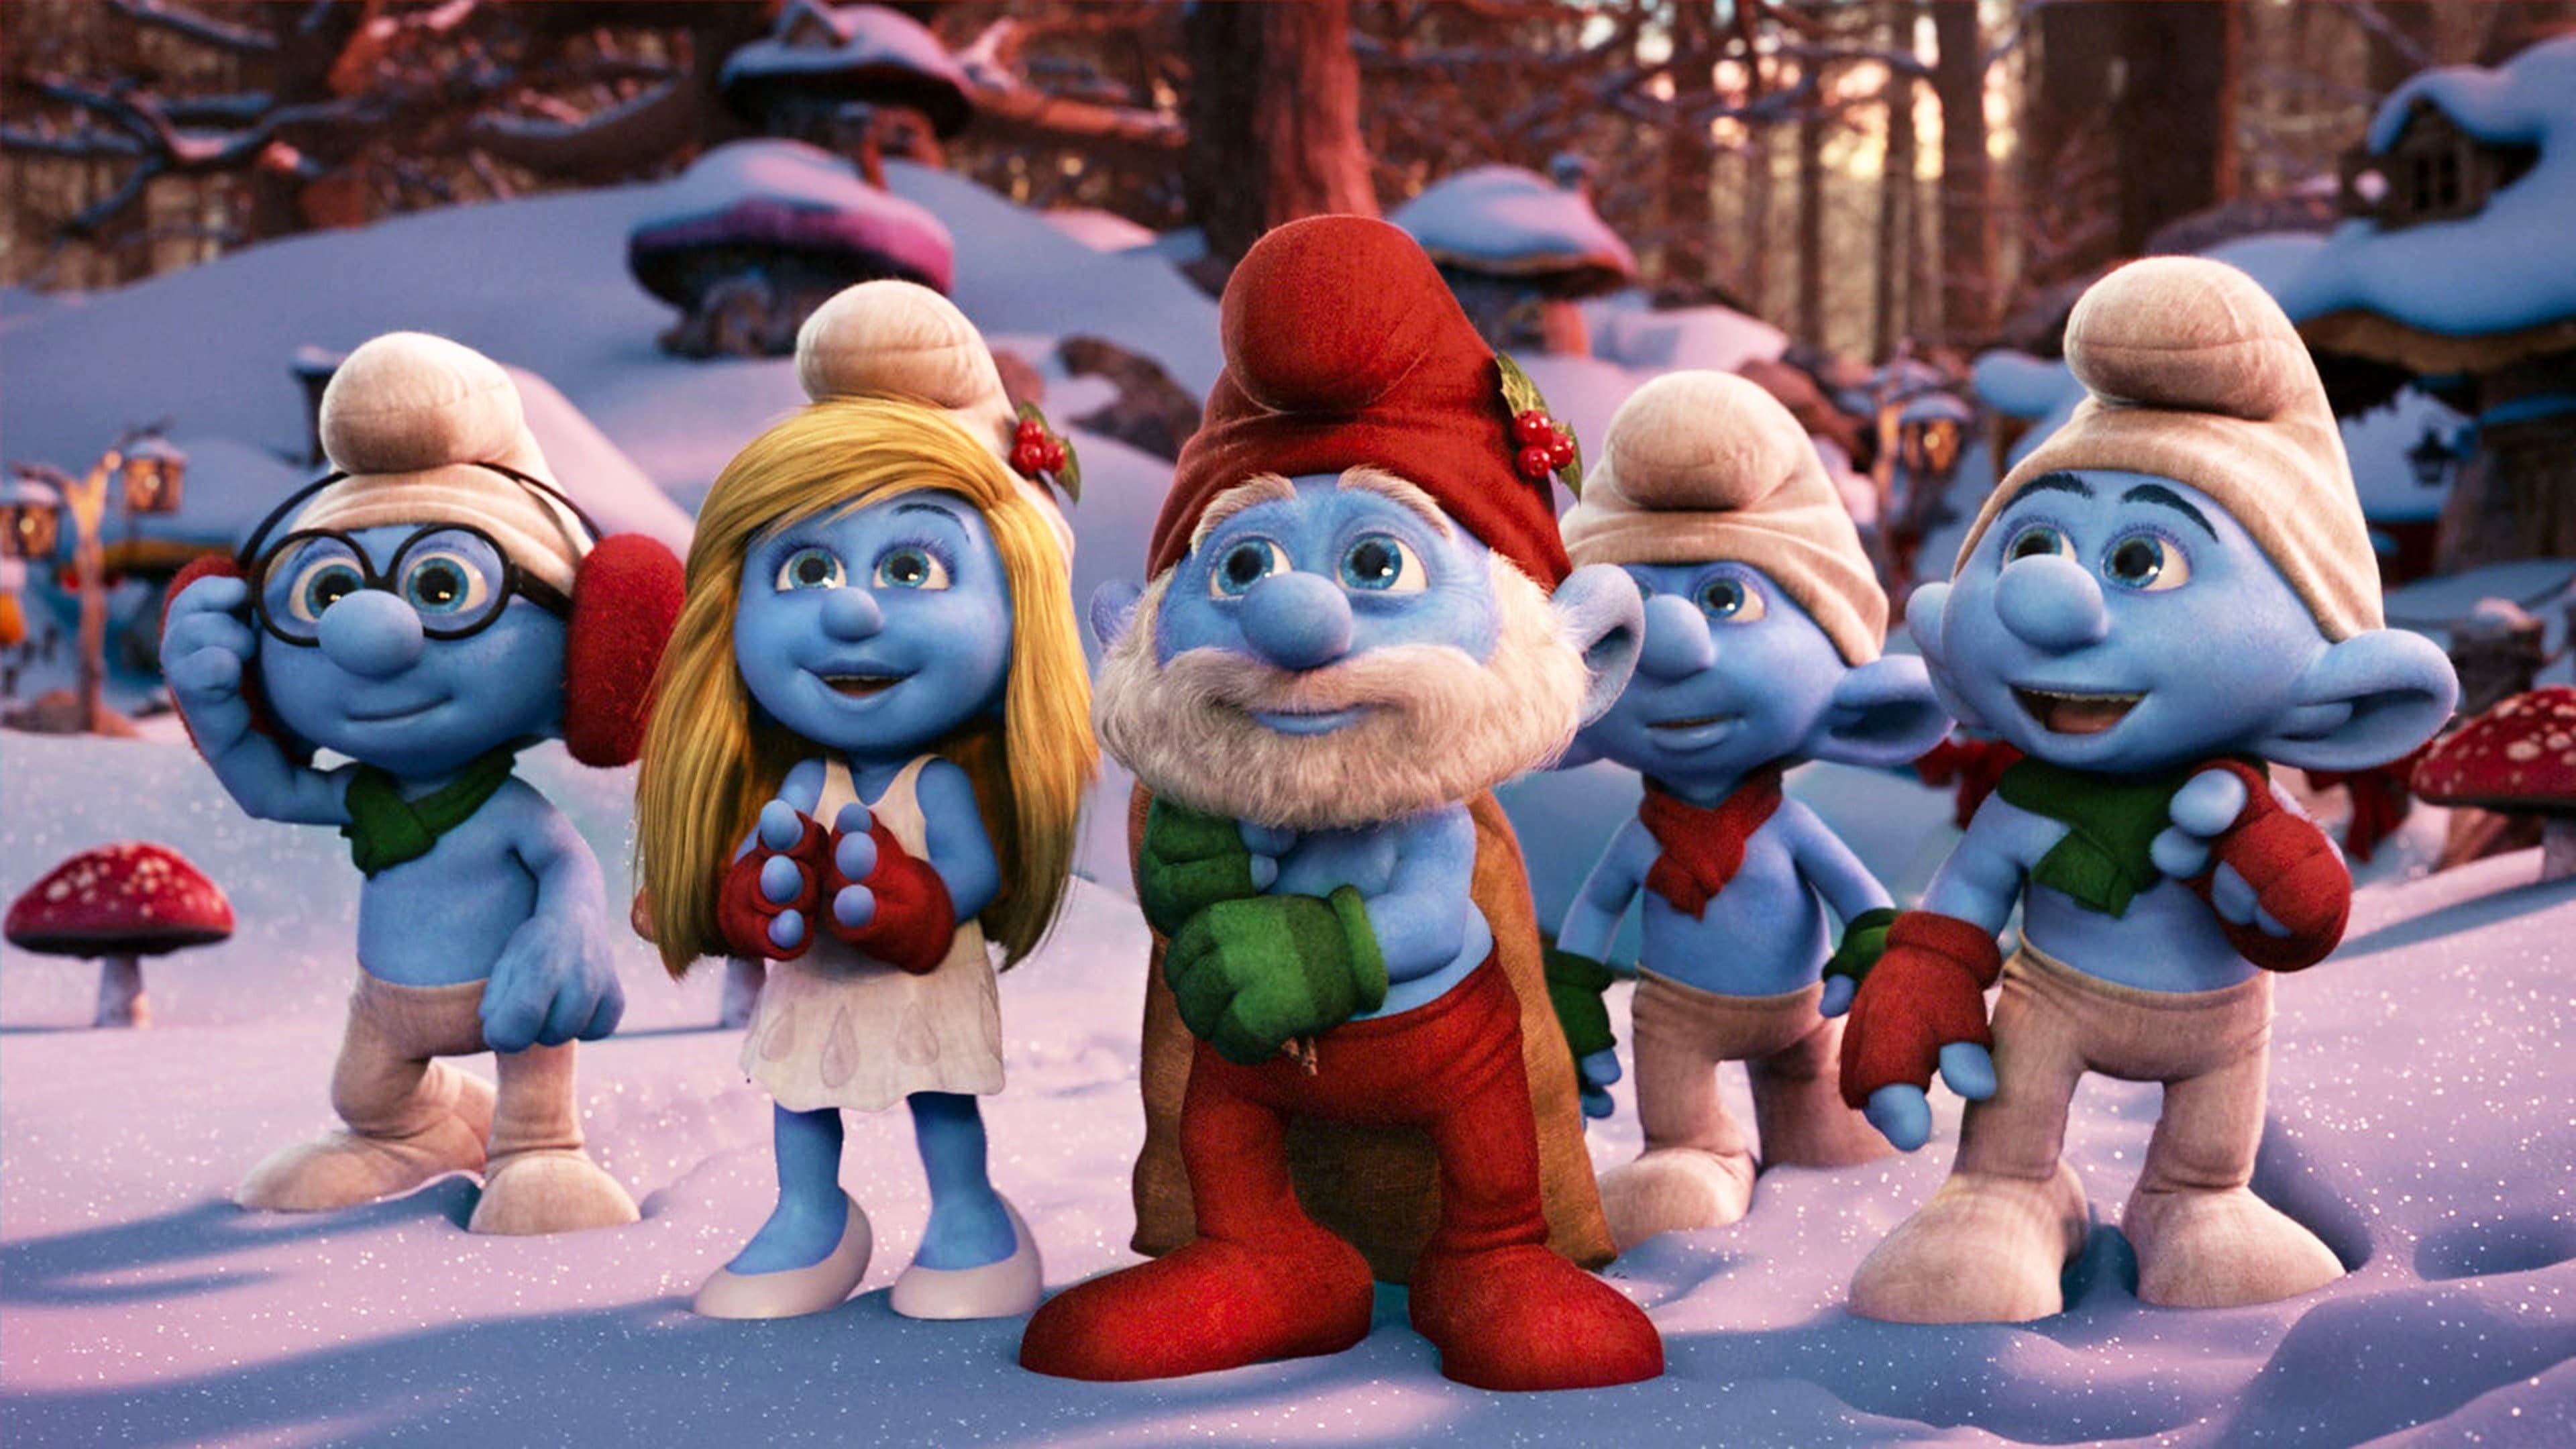 Os Smurfs: Um Conto de Natal (2011)